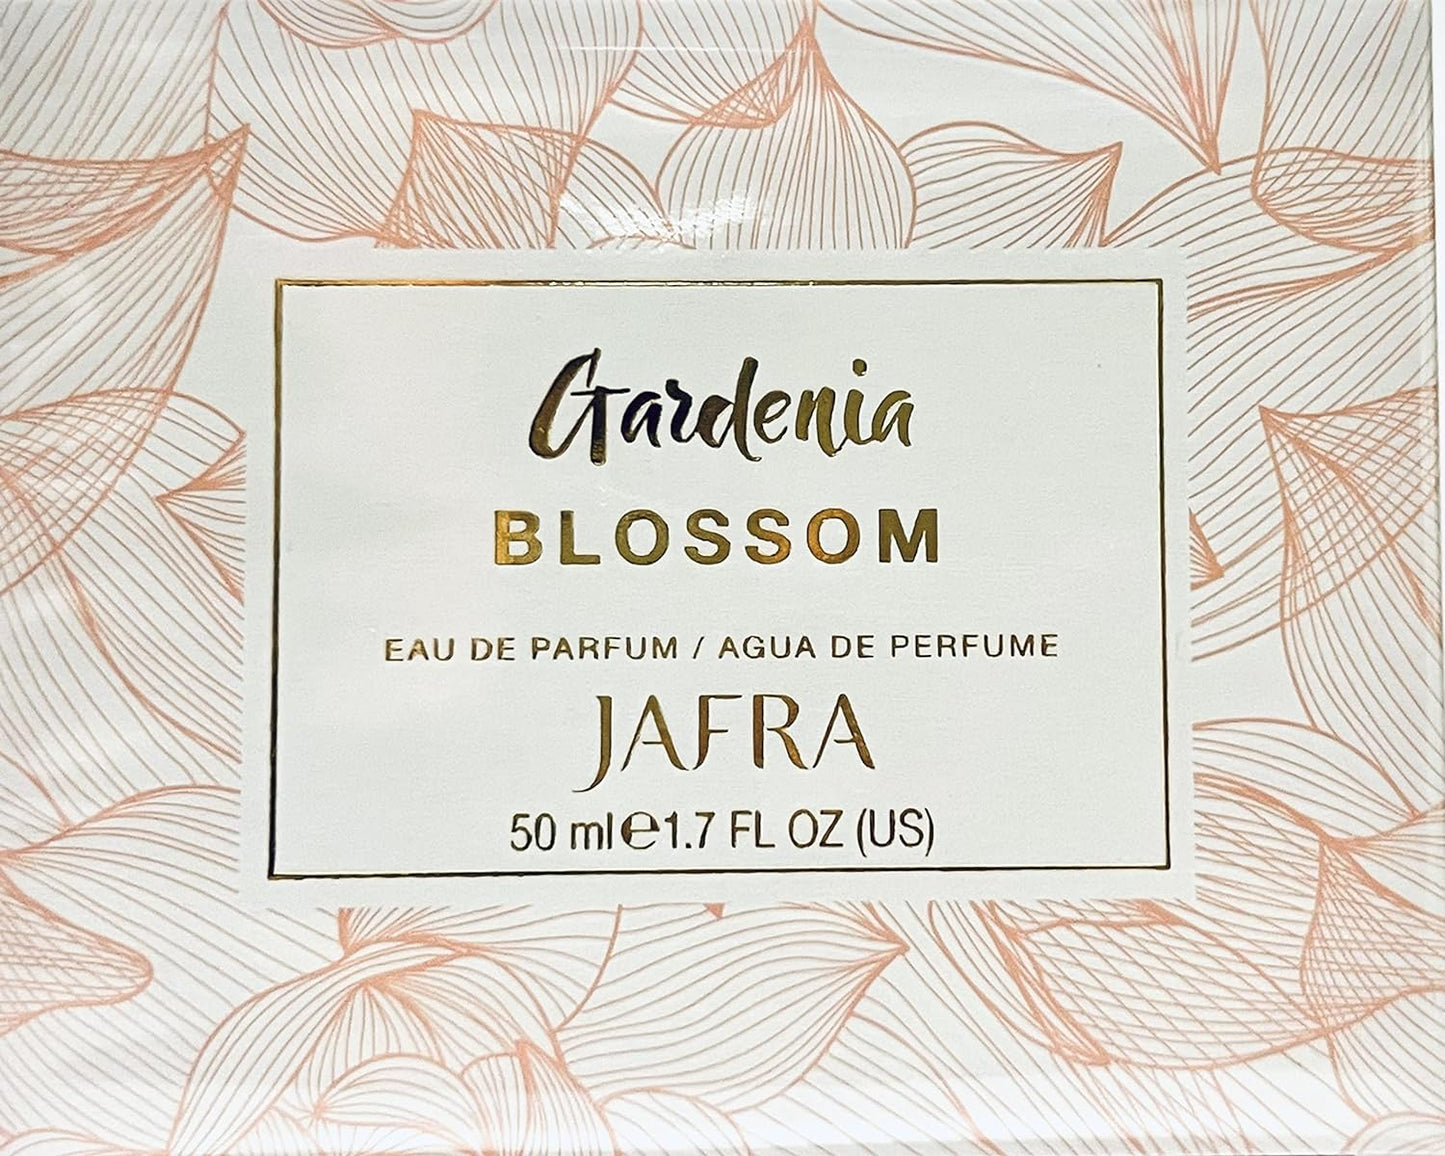 Gardenia Blossom Eau de Parfum by